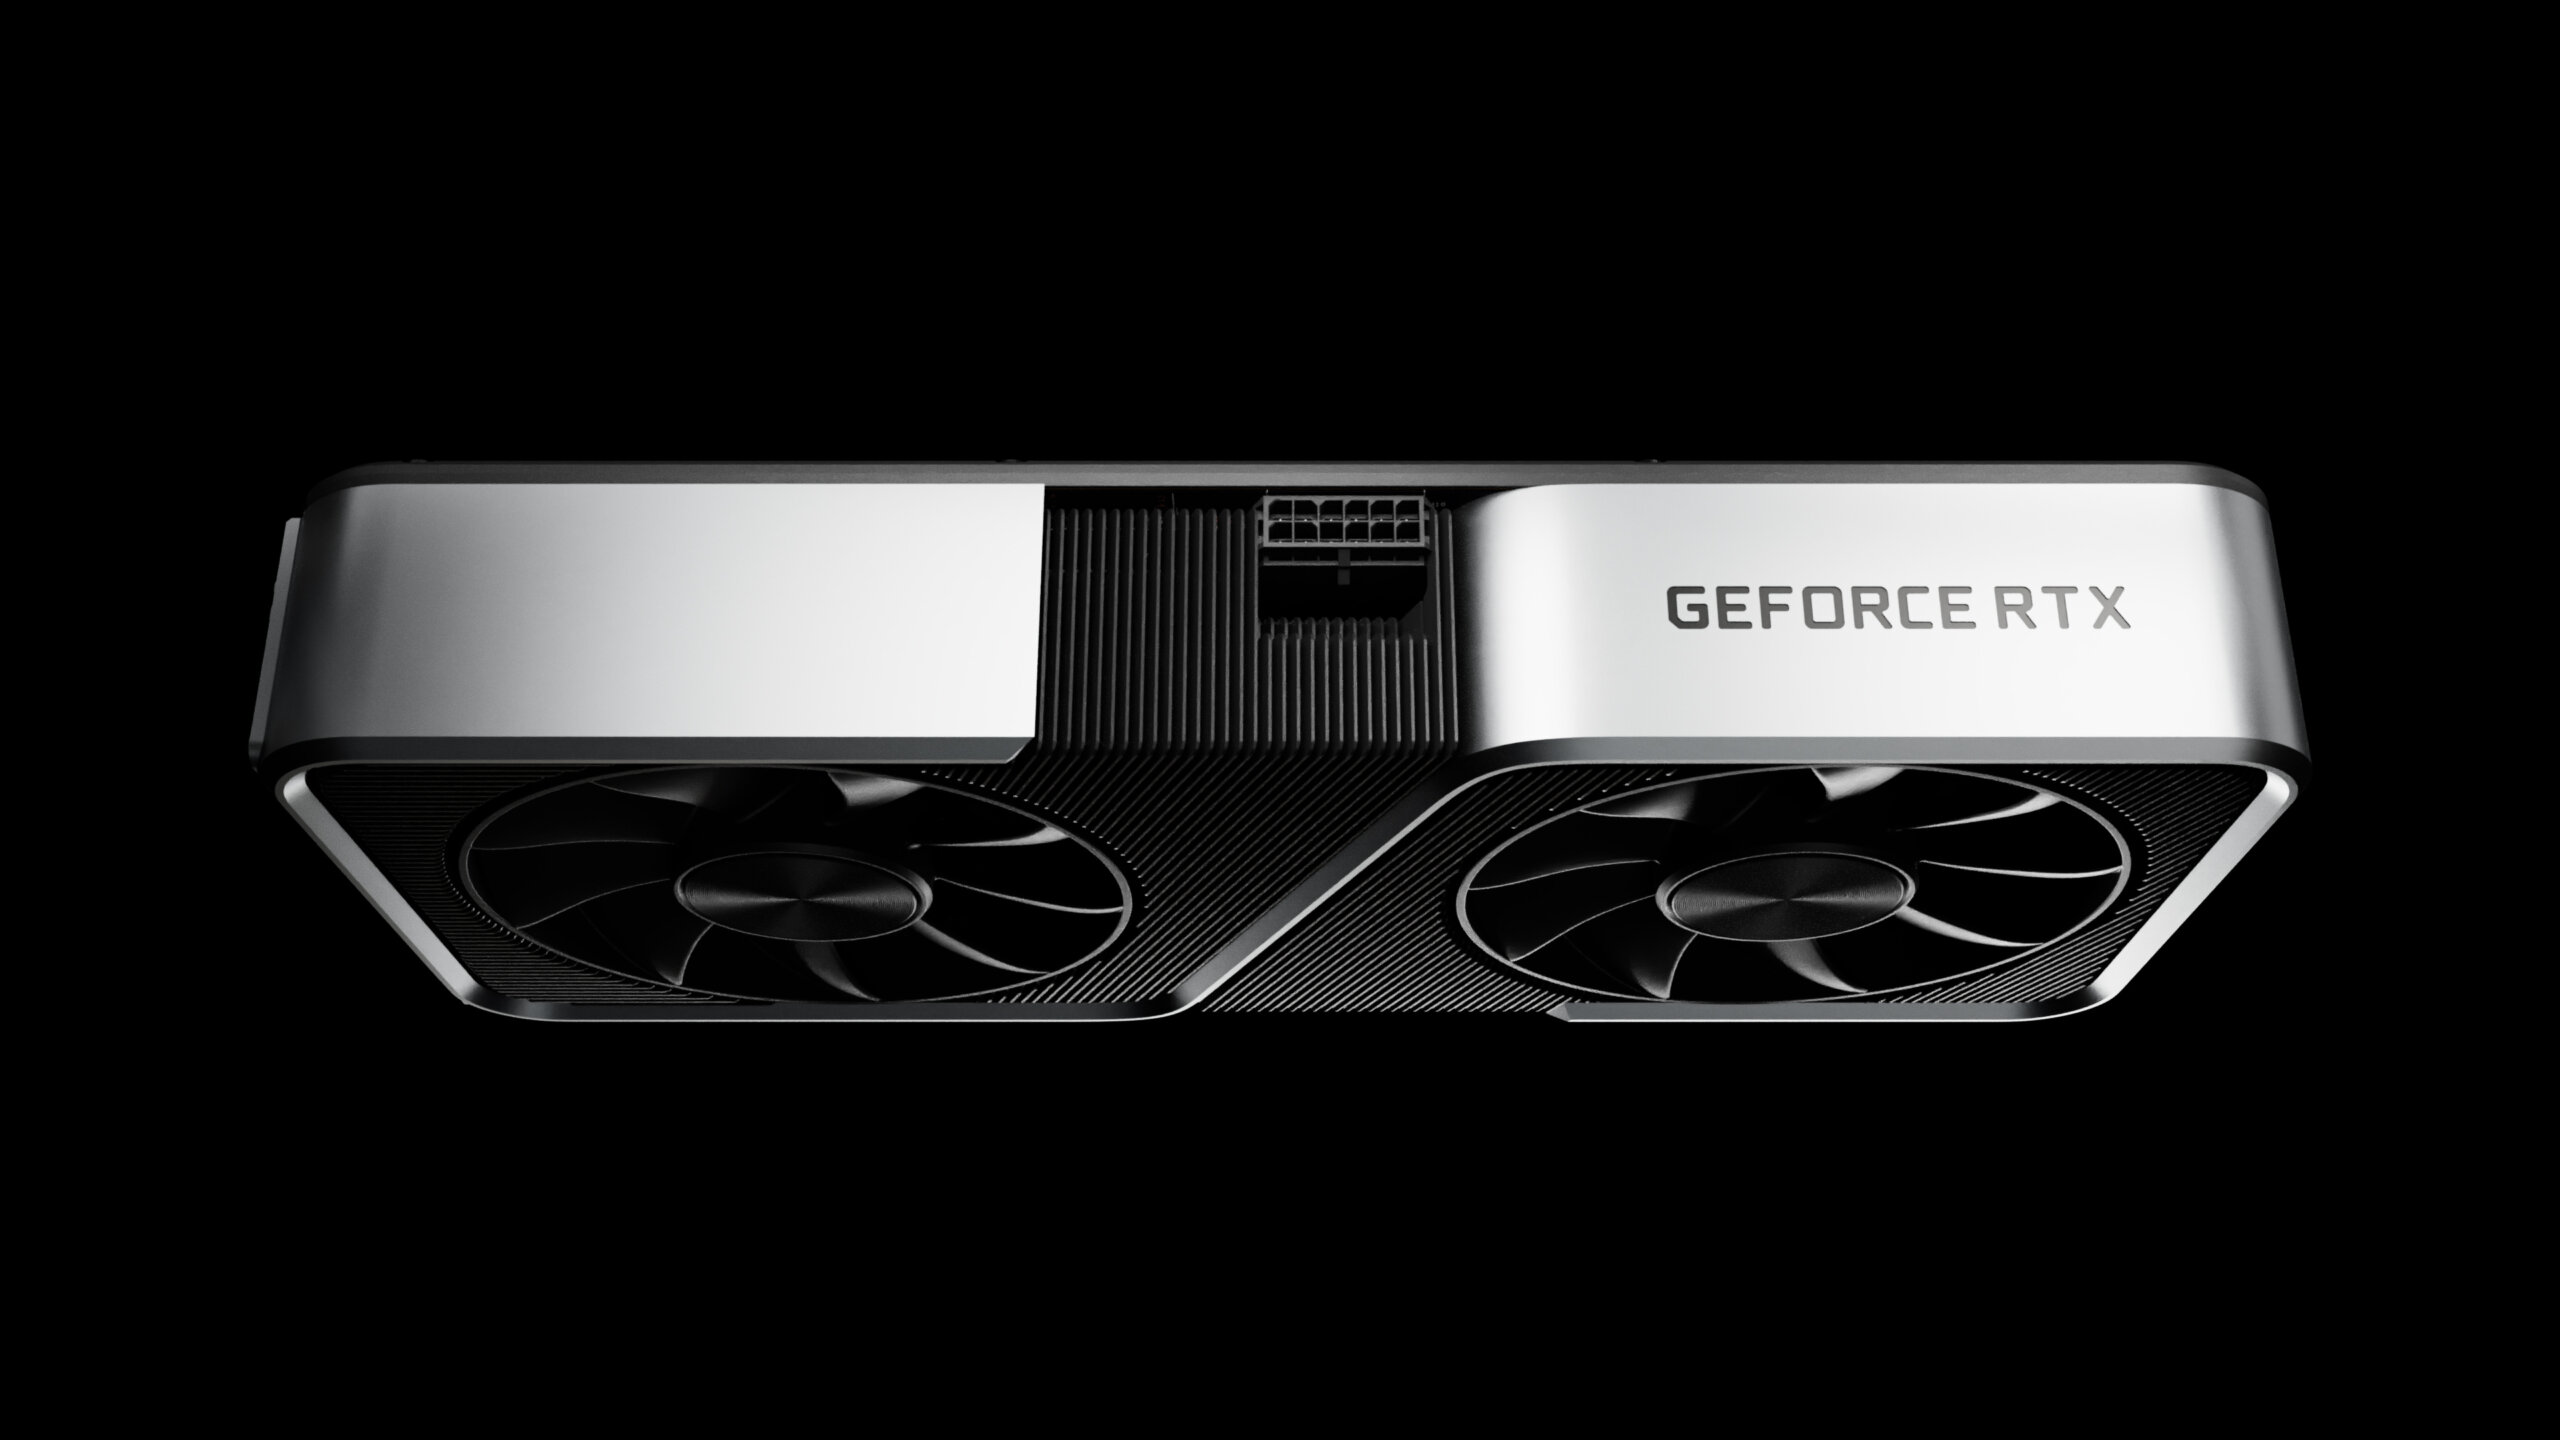 Your entire GeForce RTX 3000 Gargantuan series’ specs were leaked online